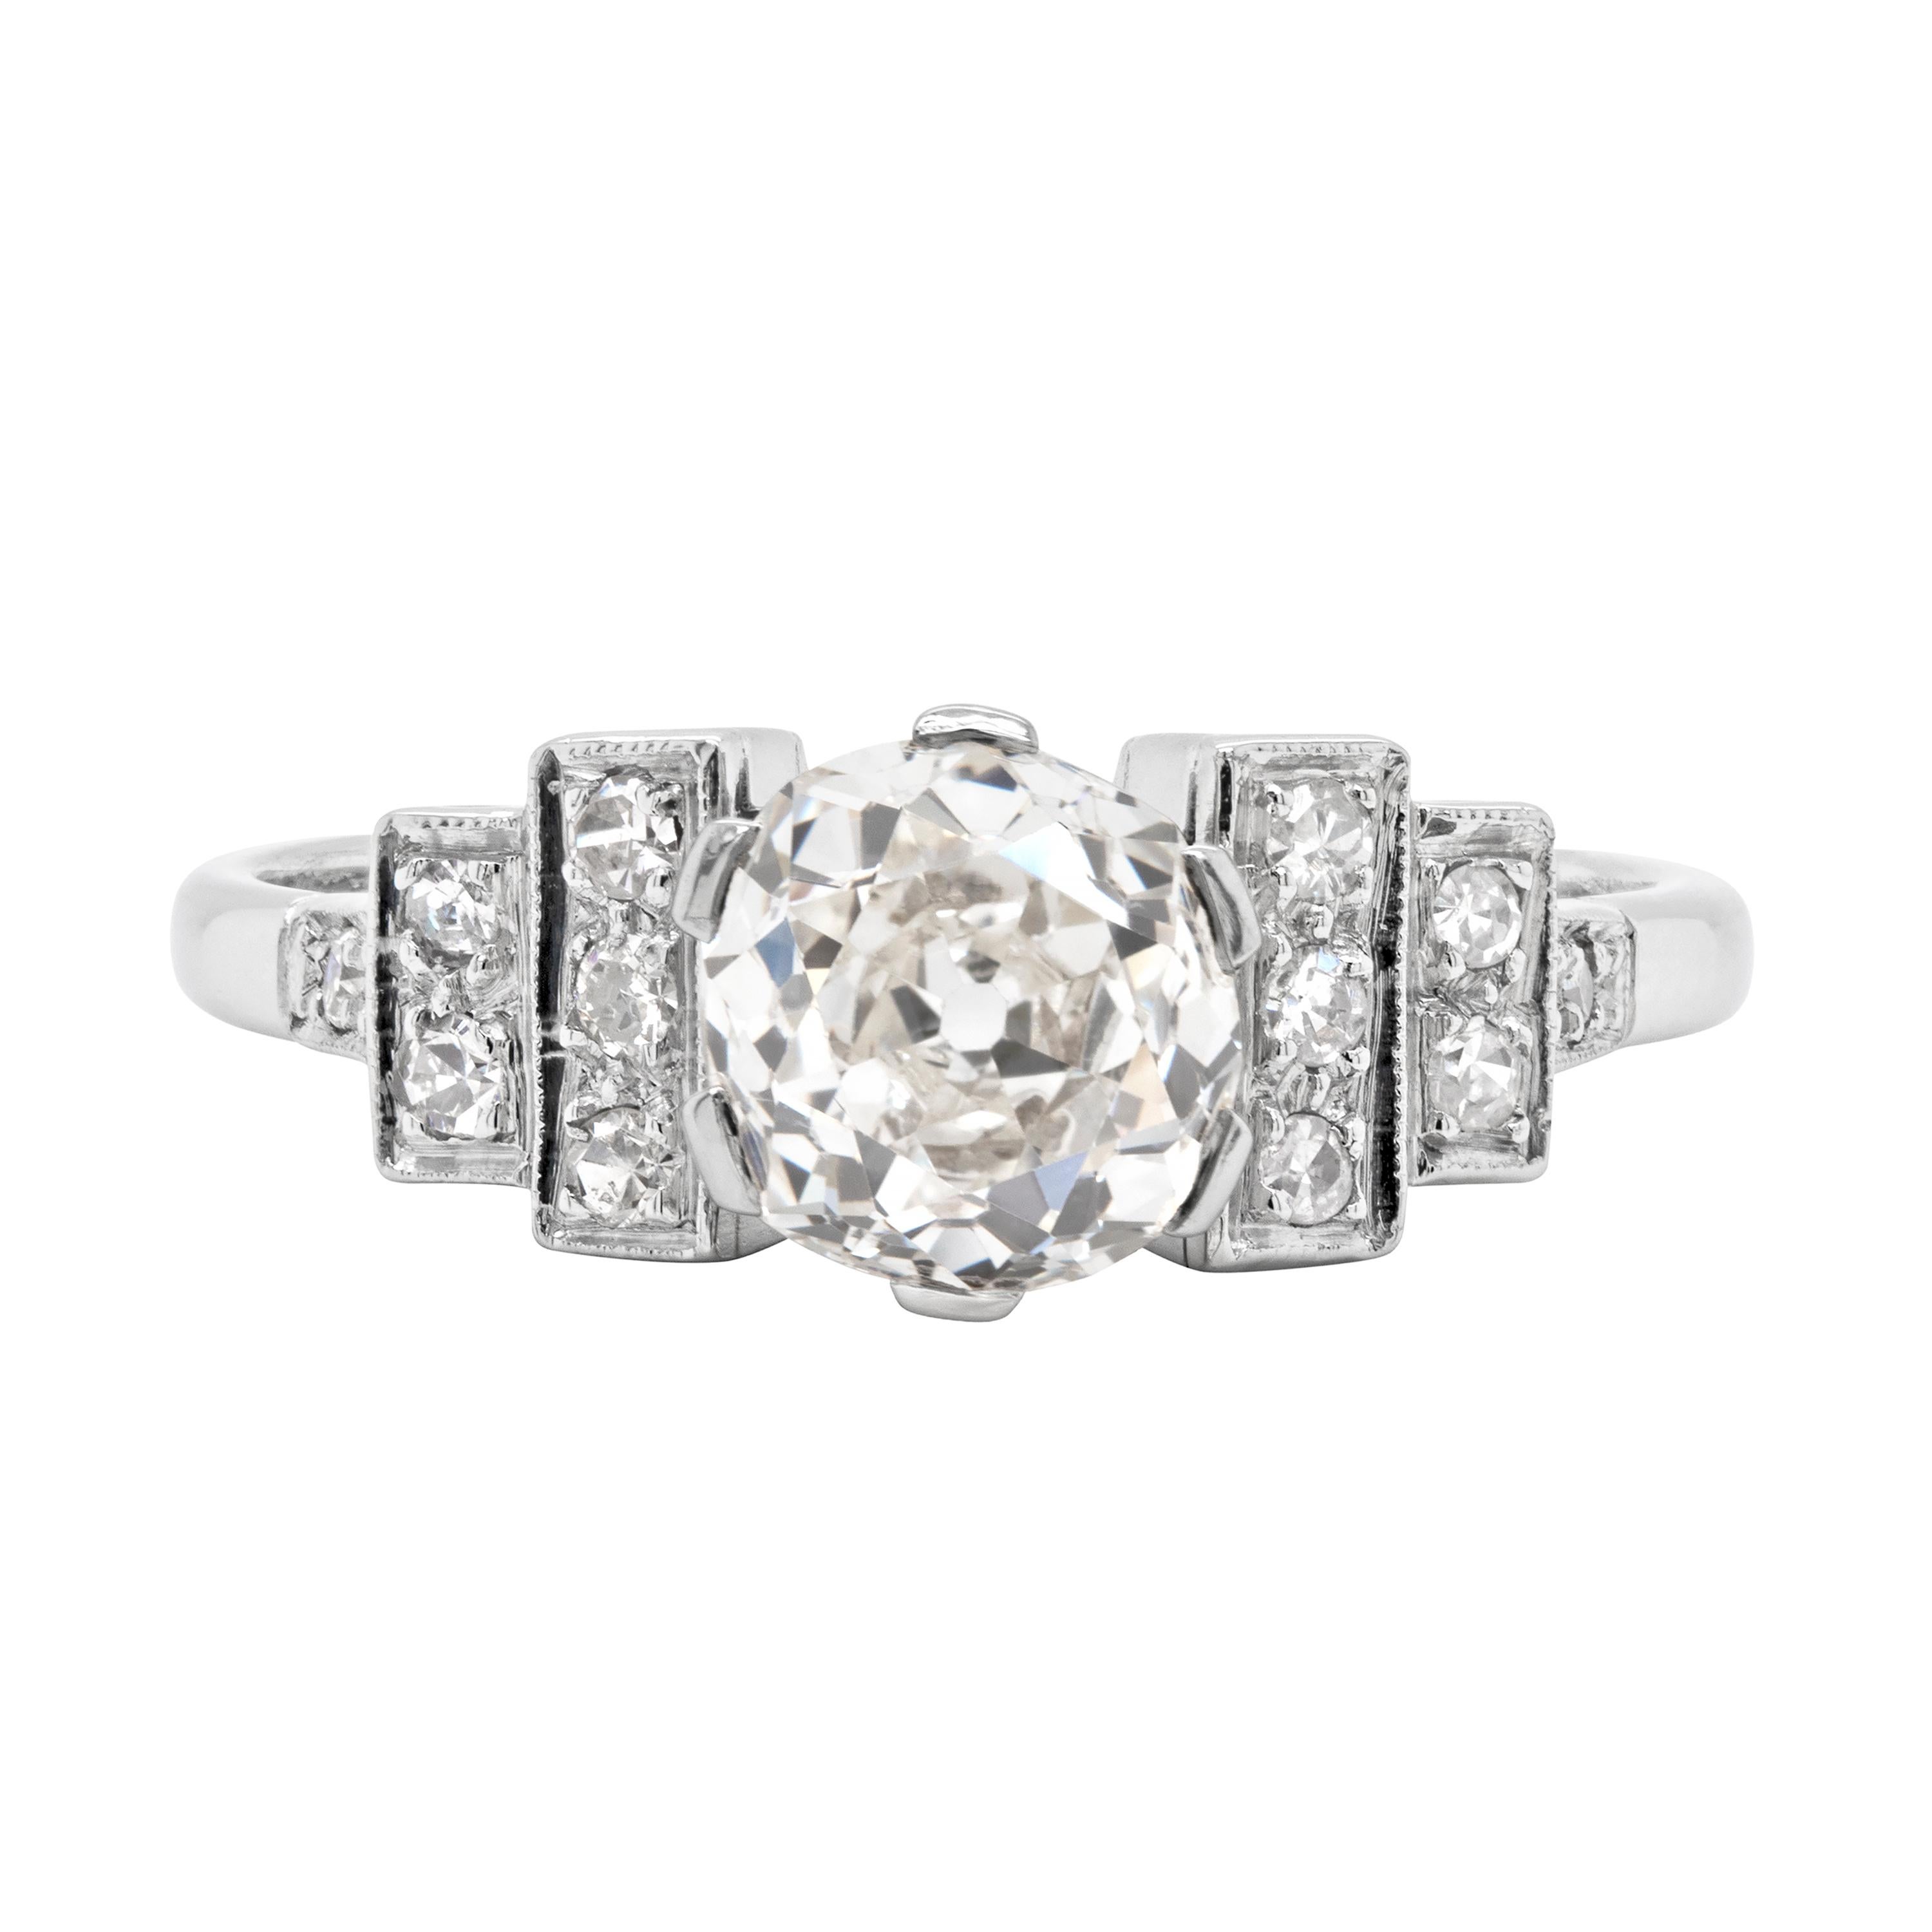 Antique Art Deco 1.75ct Old Cut Diamond Platinum Engagement Ring, Circa 1920's 